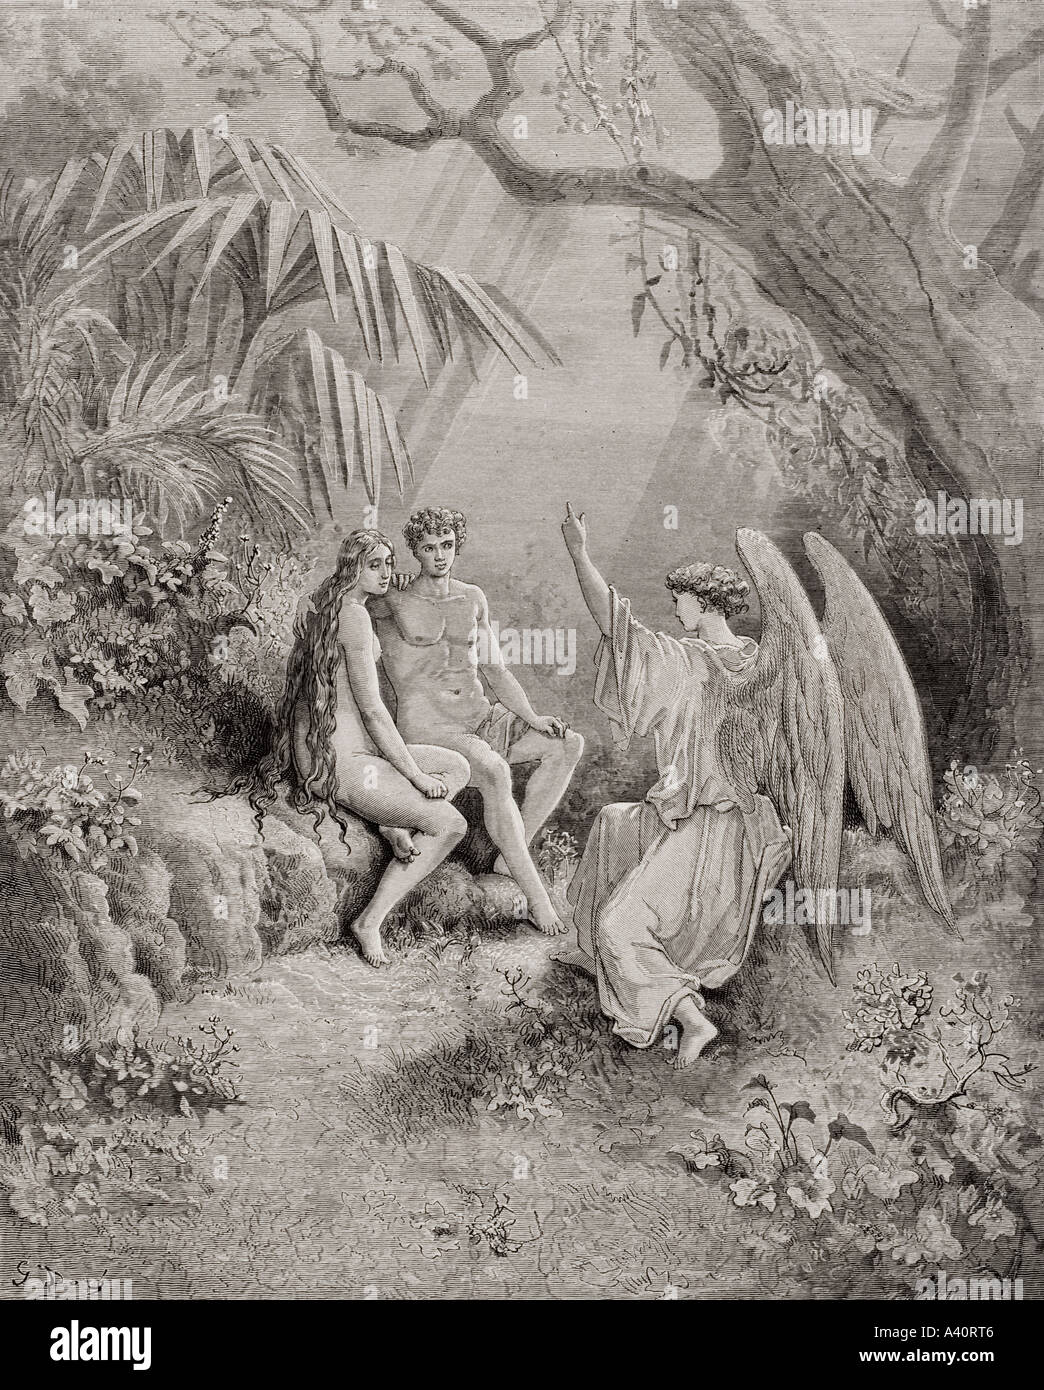 Illustrationen von Gustave Dore, 1832 - 1883. Französische Künstler und Illustrator für Paradise Lost von John Milton, Buch V, Zeilen 468 bis 470. Stockfoto